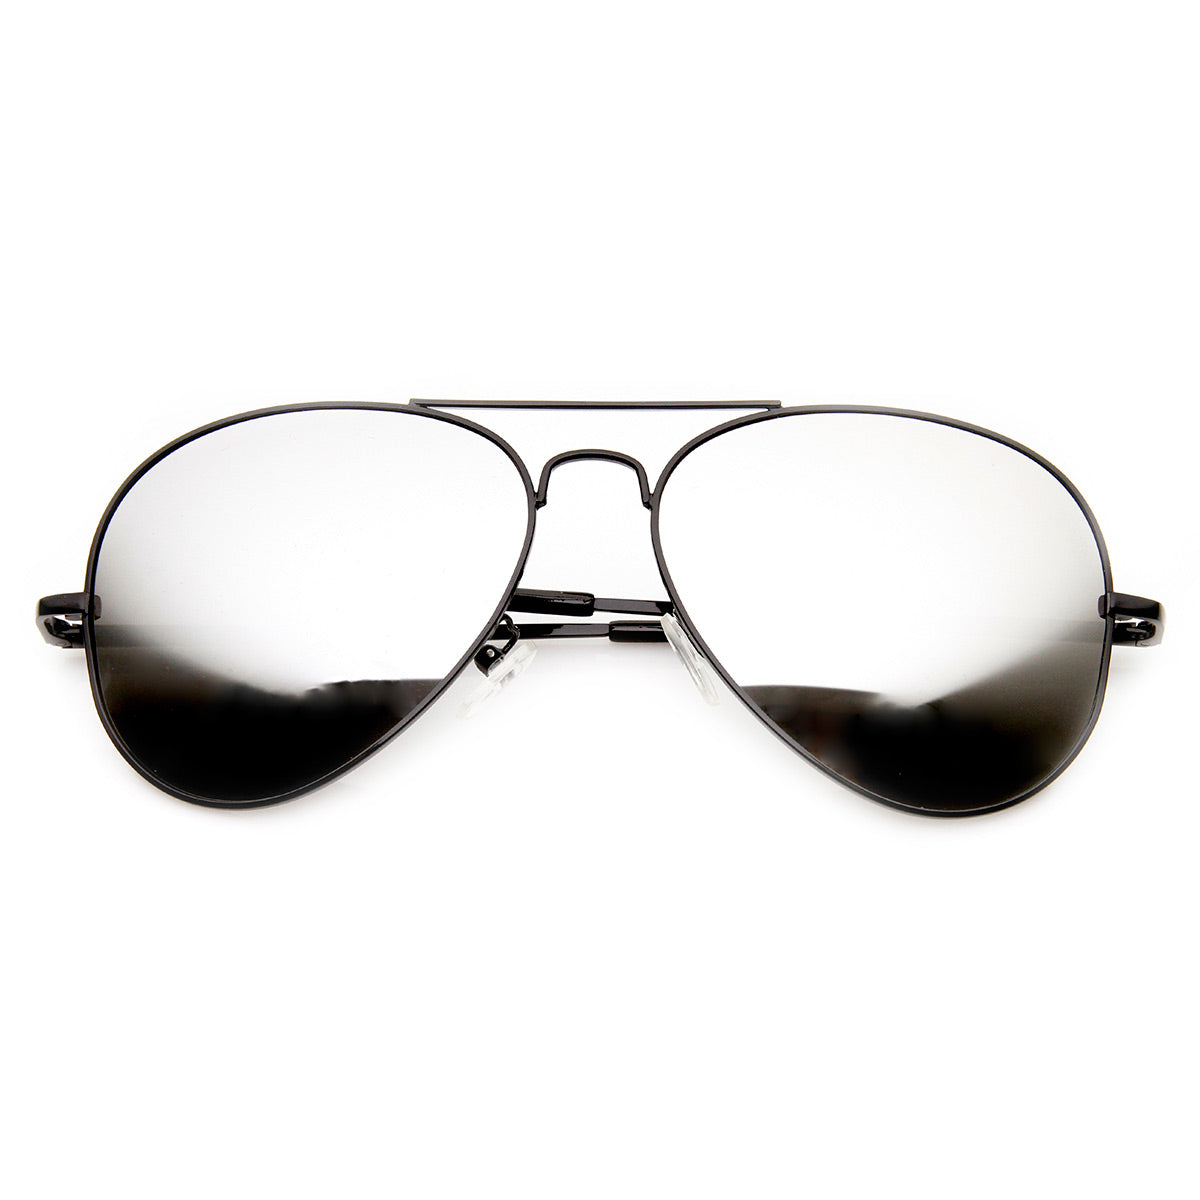 FULL MIRROR Metal Sunglasses Aviator Mirrored